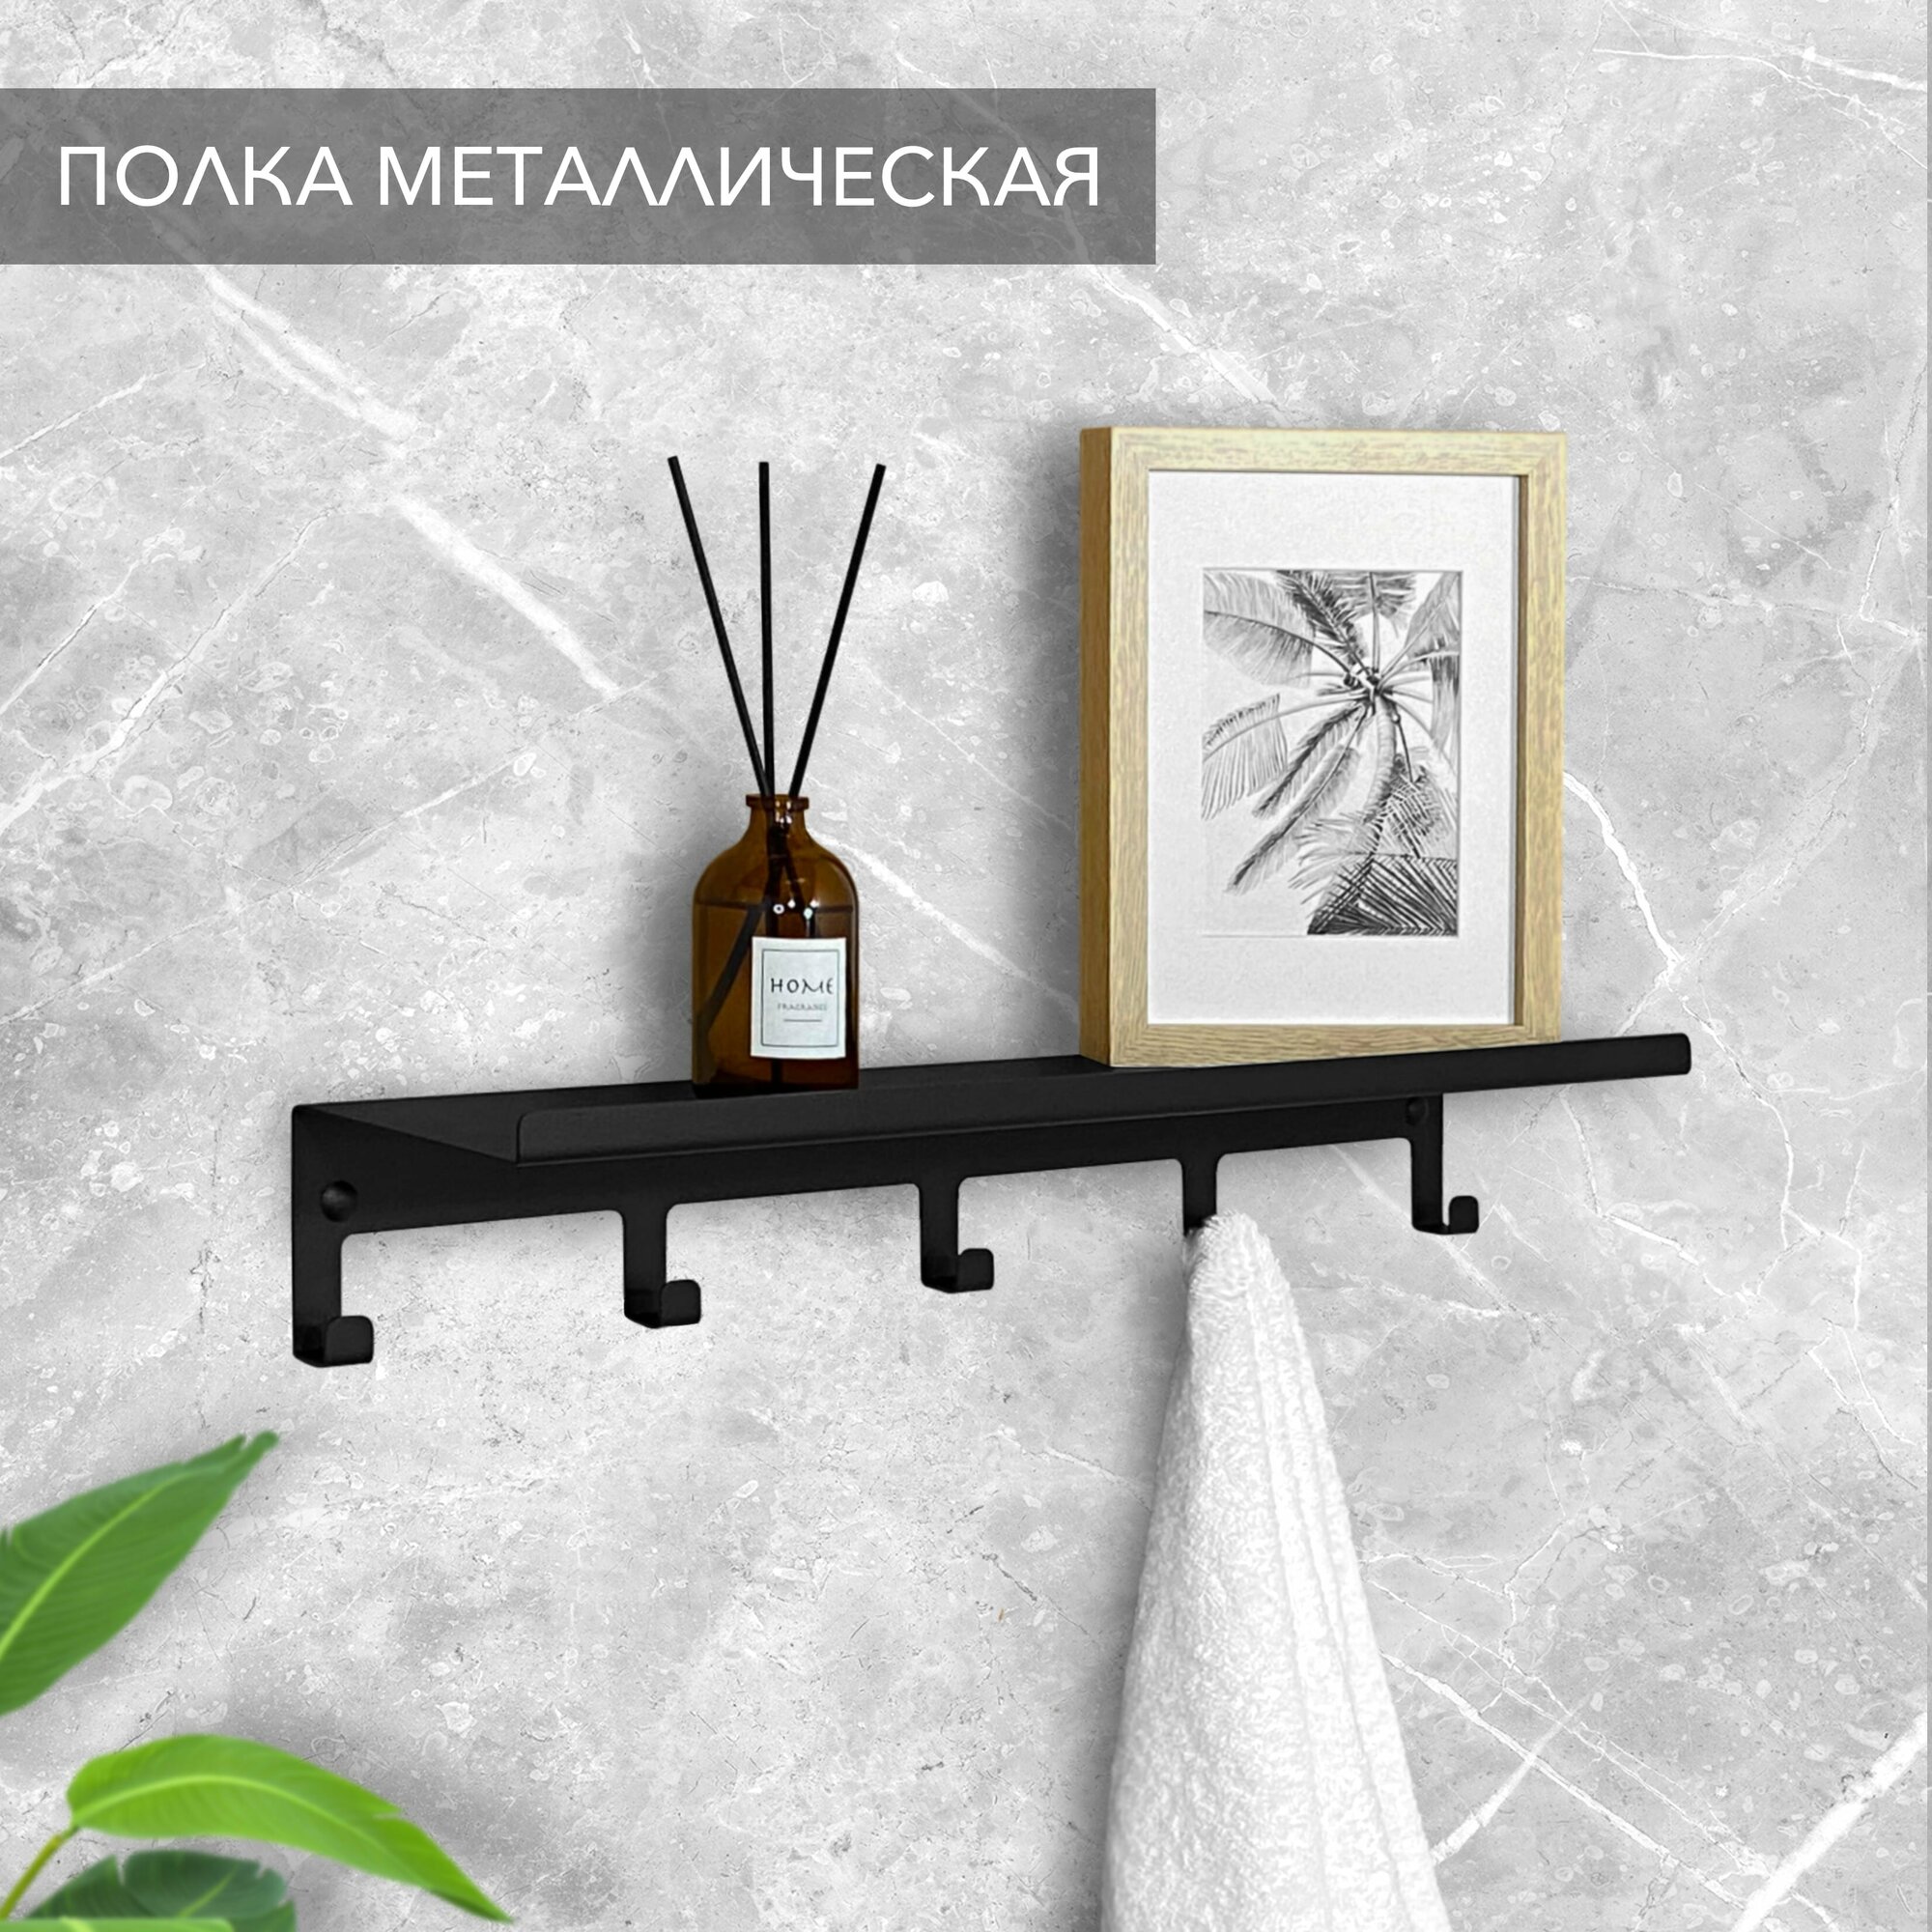 Полка с крючками Alvente прямая настенная навесная (подвесная) металлическая черная на стену в комнату ванную кухню гостиную прихожую лофт 50 см